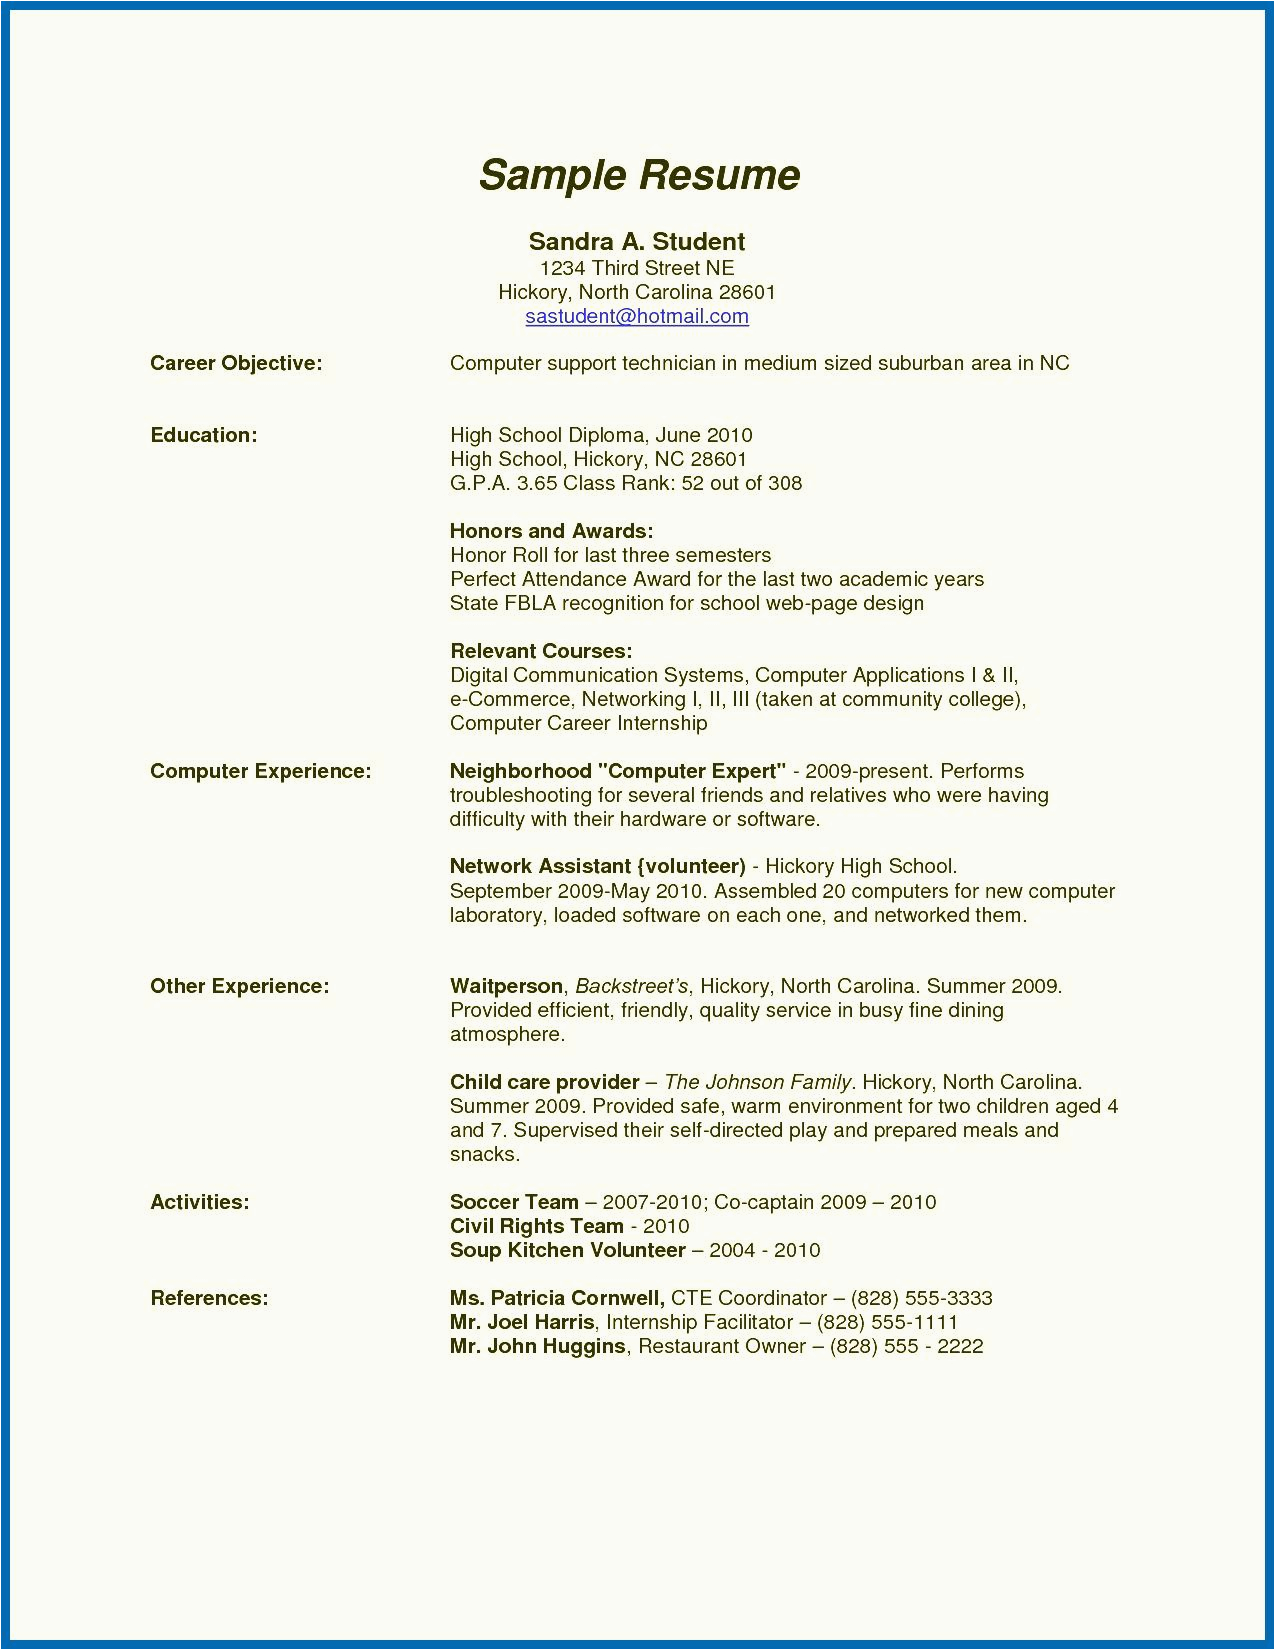 Sample Resume for Summer Job College Student Philippines 11 12 High School Resume for Summer Job Aikenexplorer